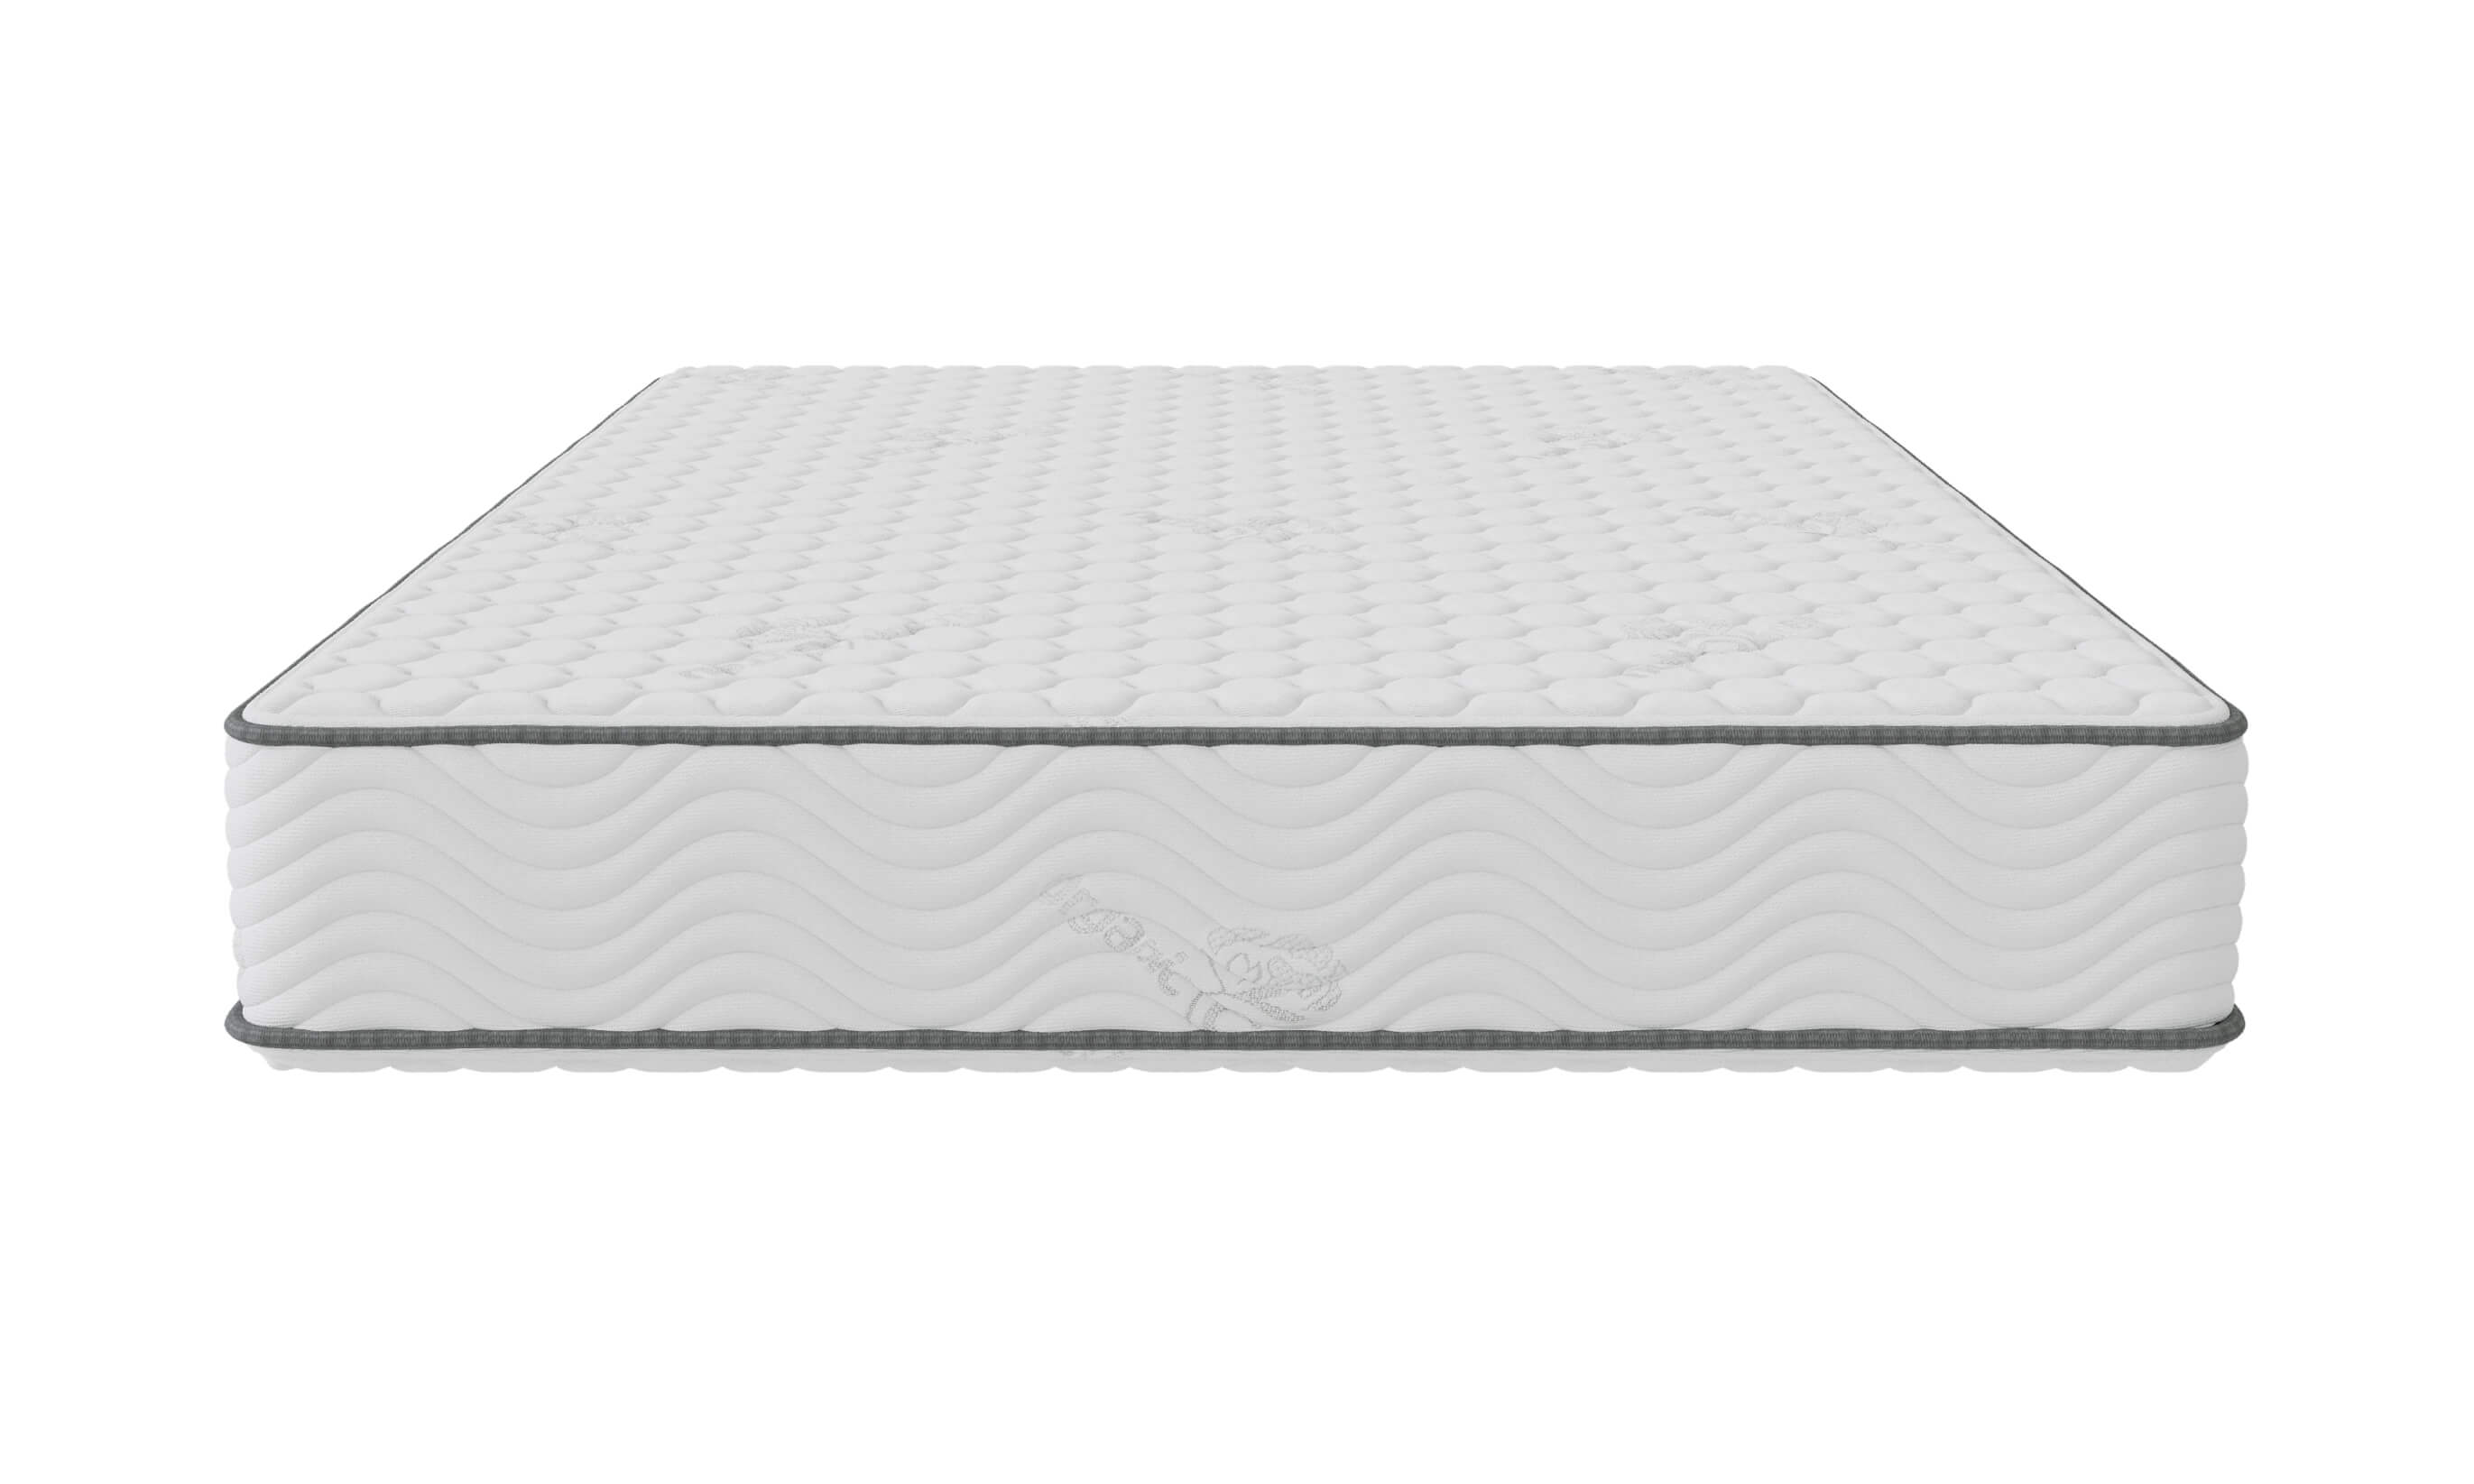 Medley organic natural latex mattress